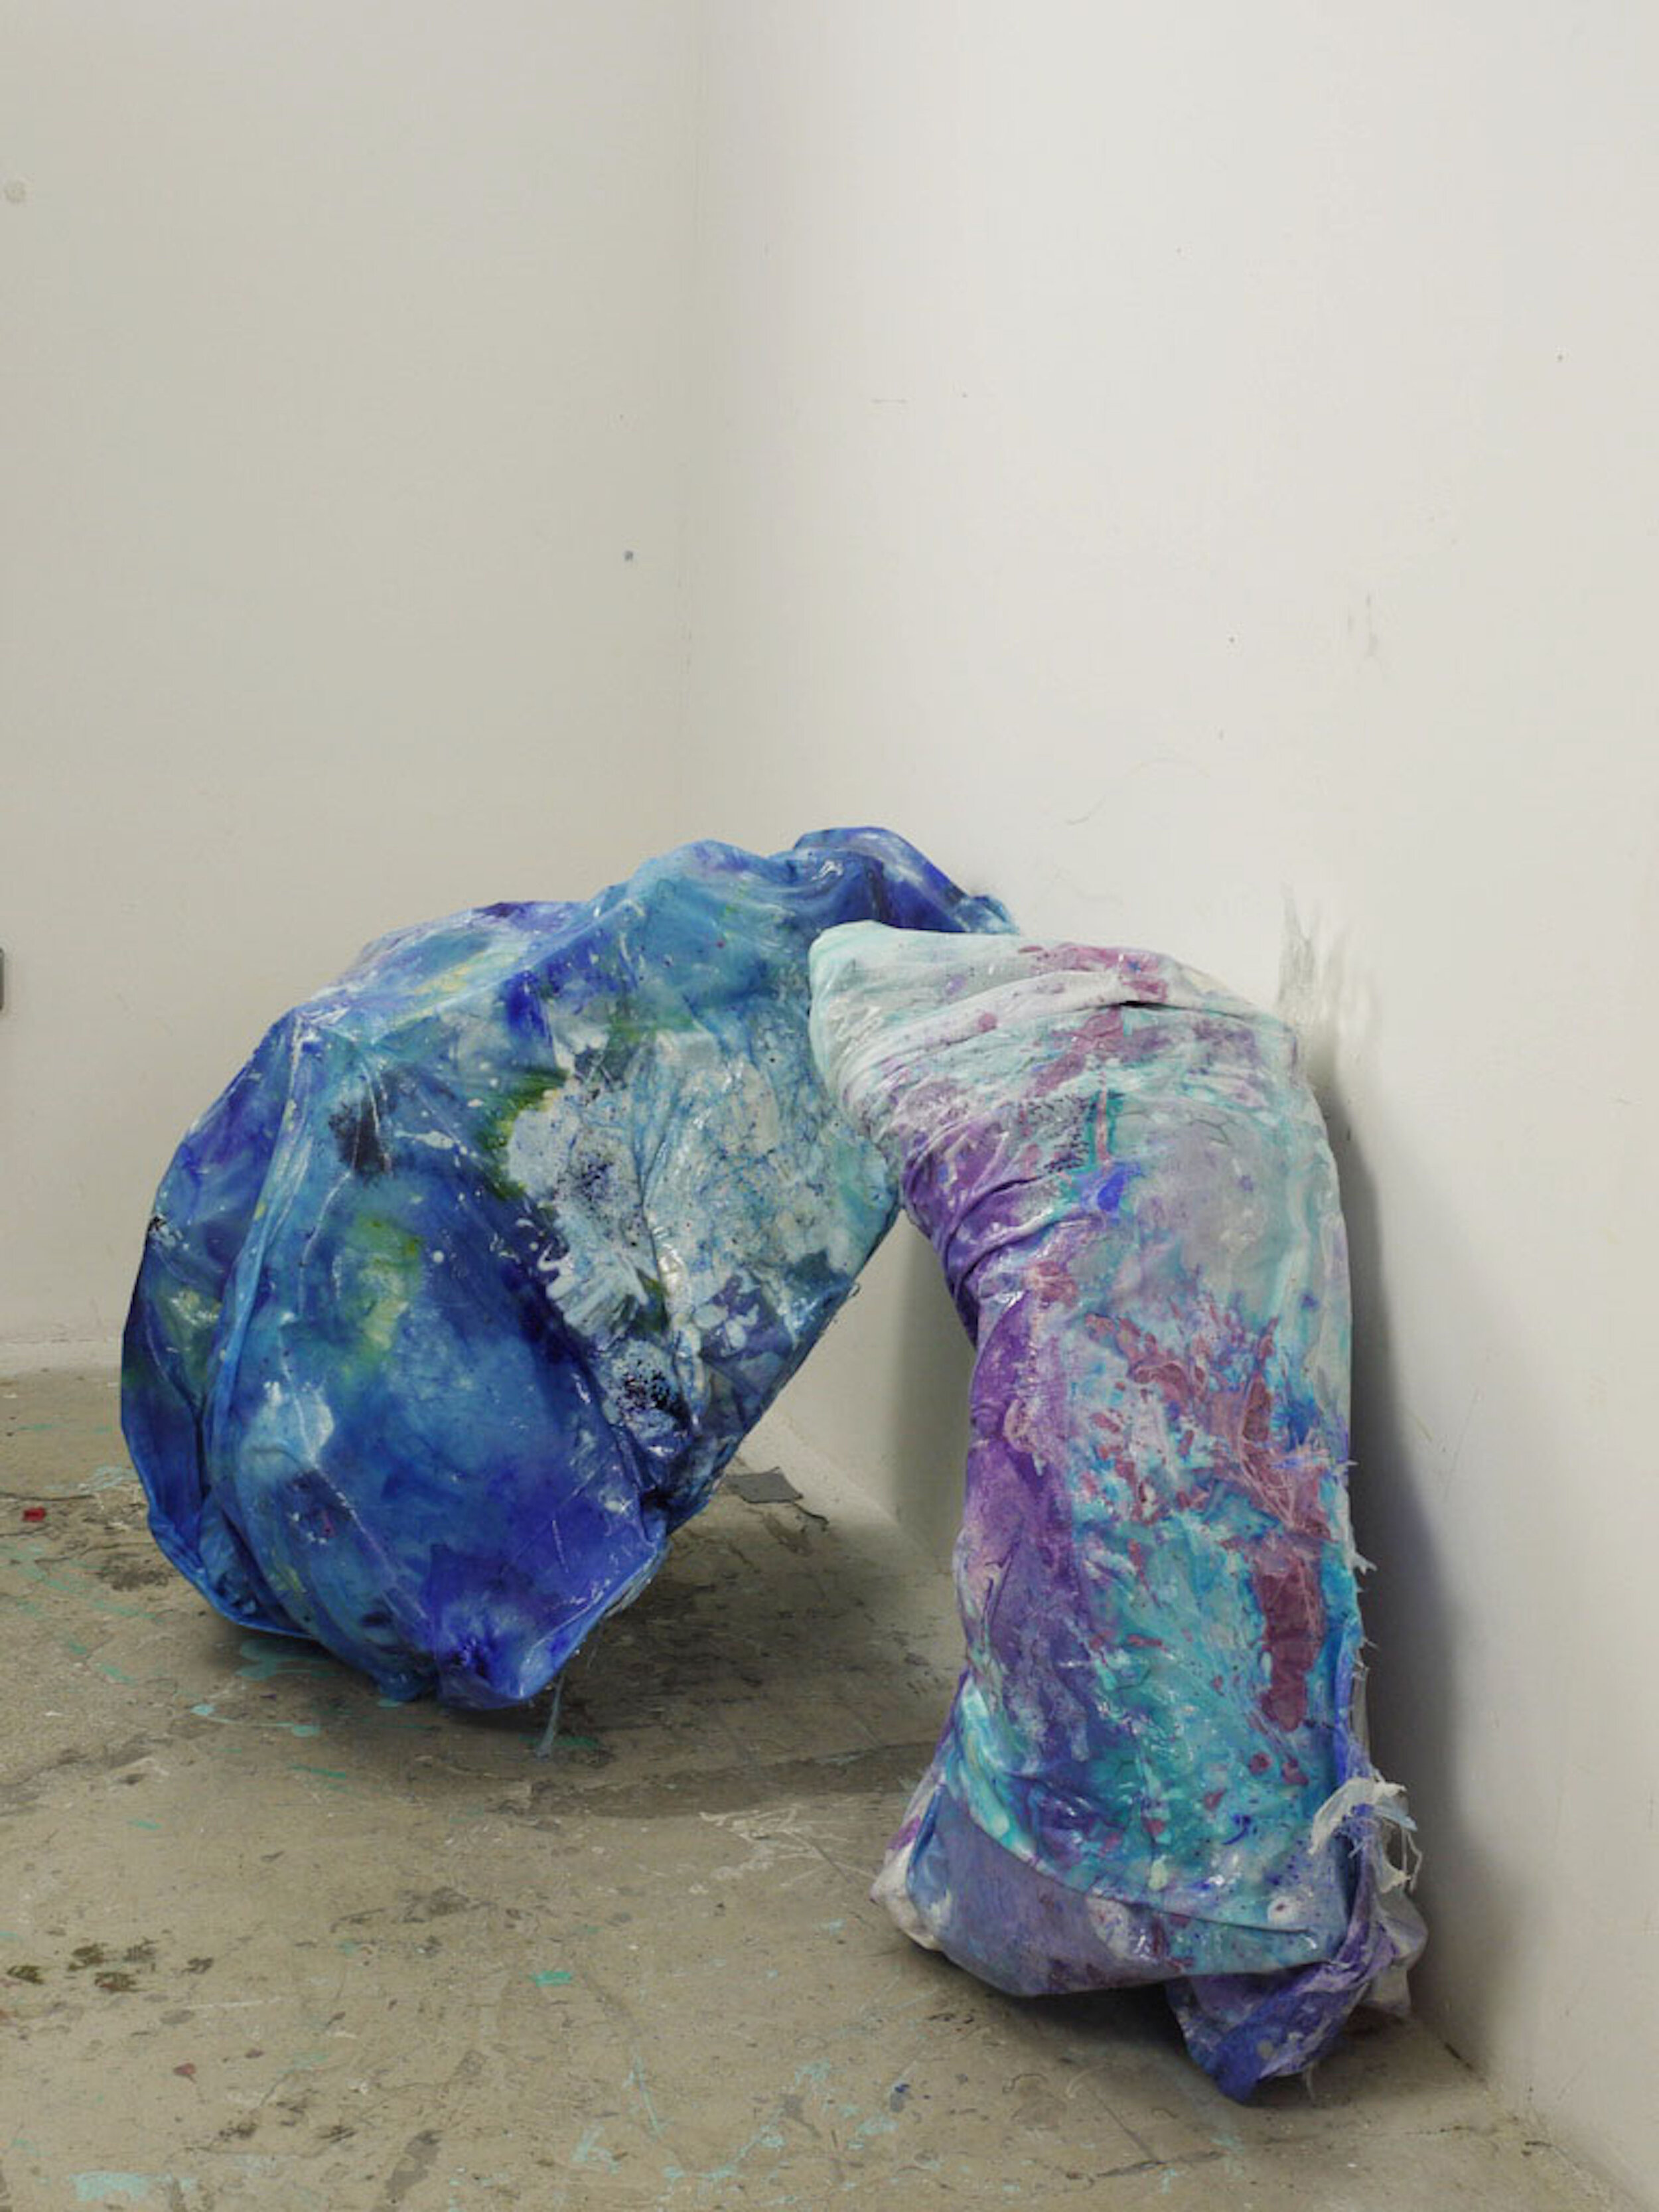  “Incontro” (March 2021)  Medium: Mixed media sculpture installation  200cm x 150cm x 100cm 